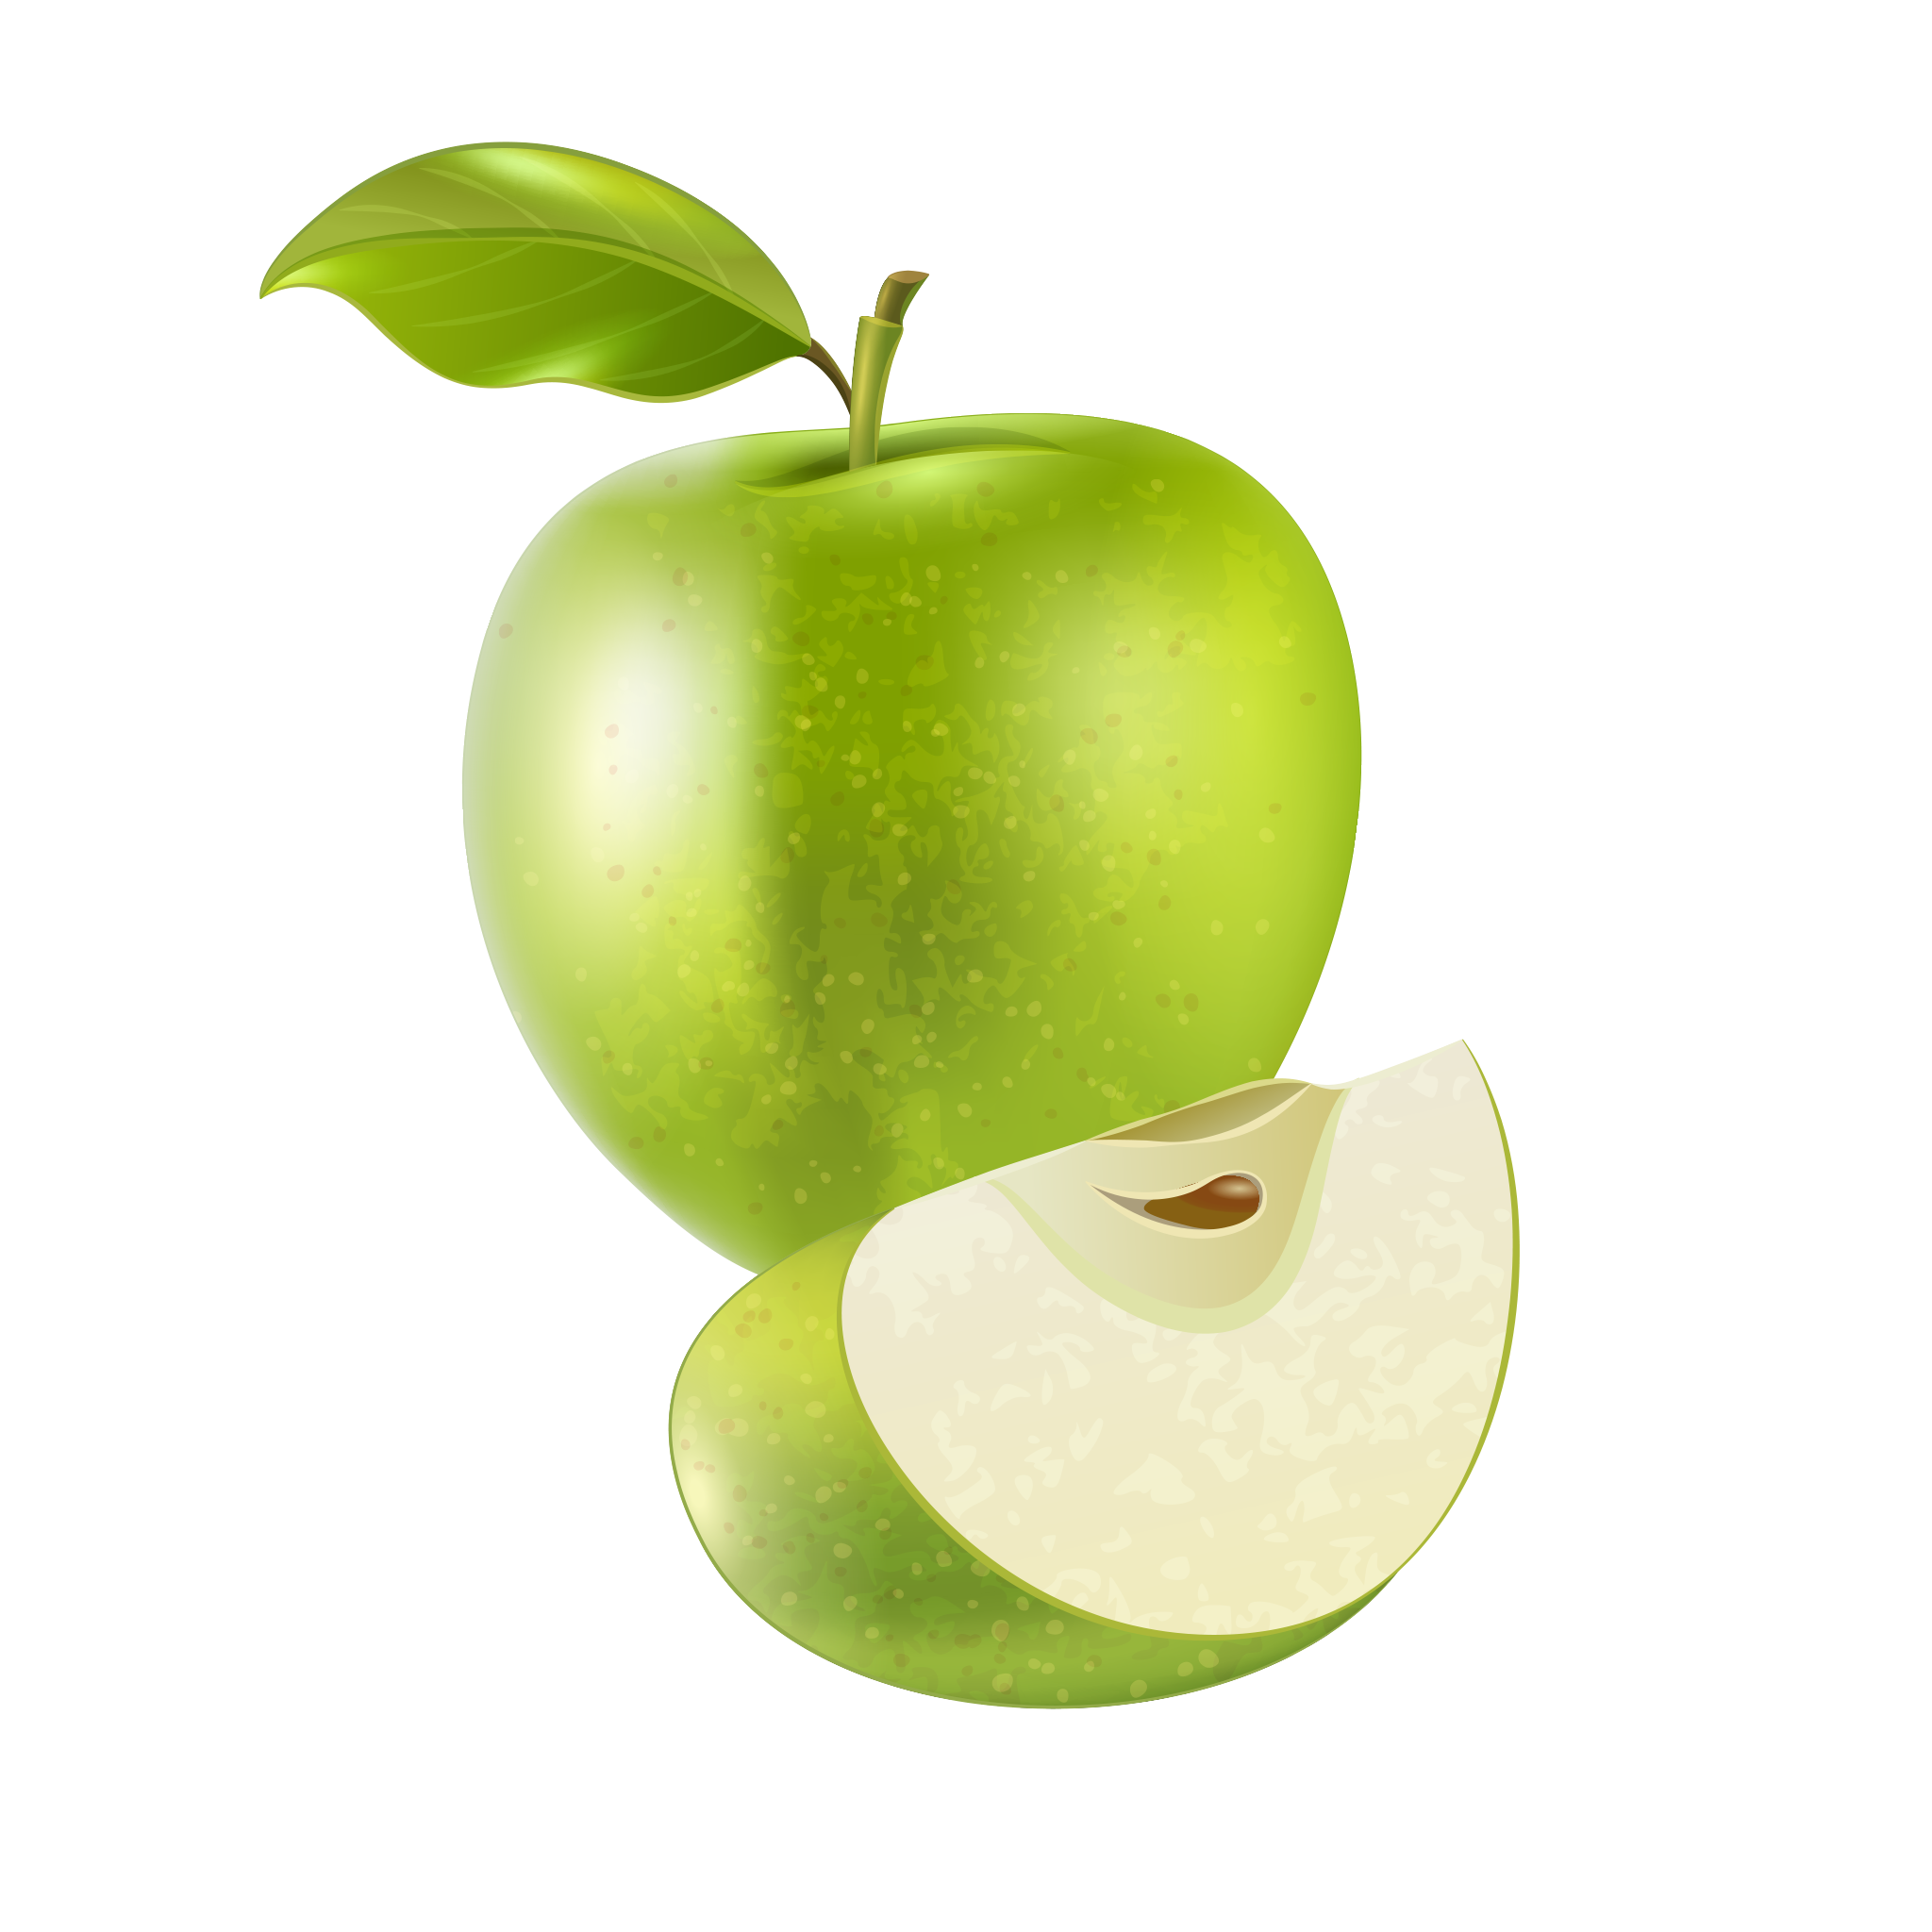 Green Cut PNG transparente de la fruta de manzana